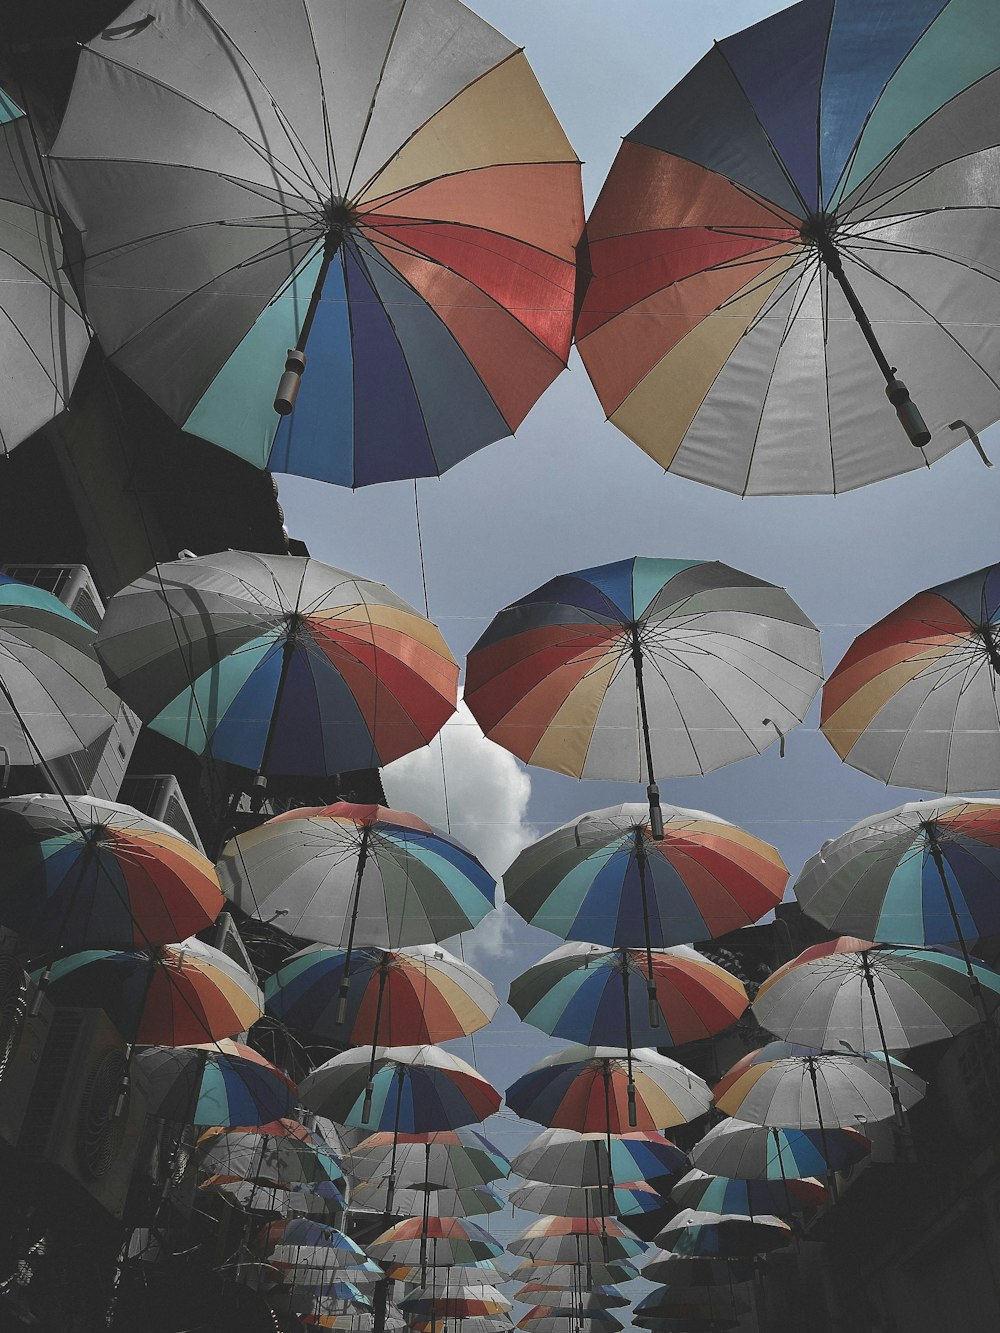 rainbow-colored umbrellas